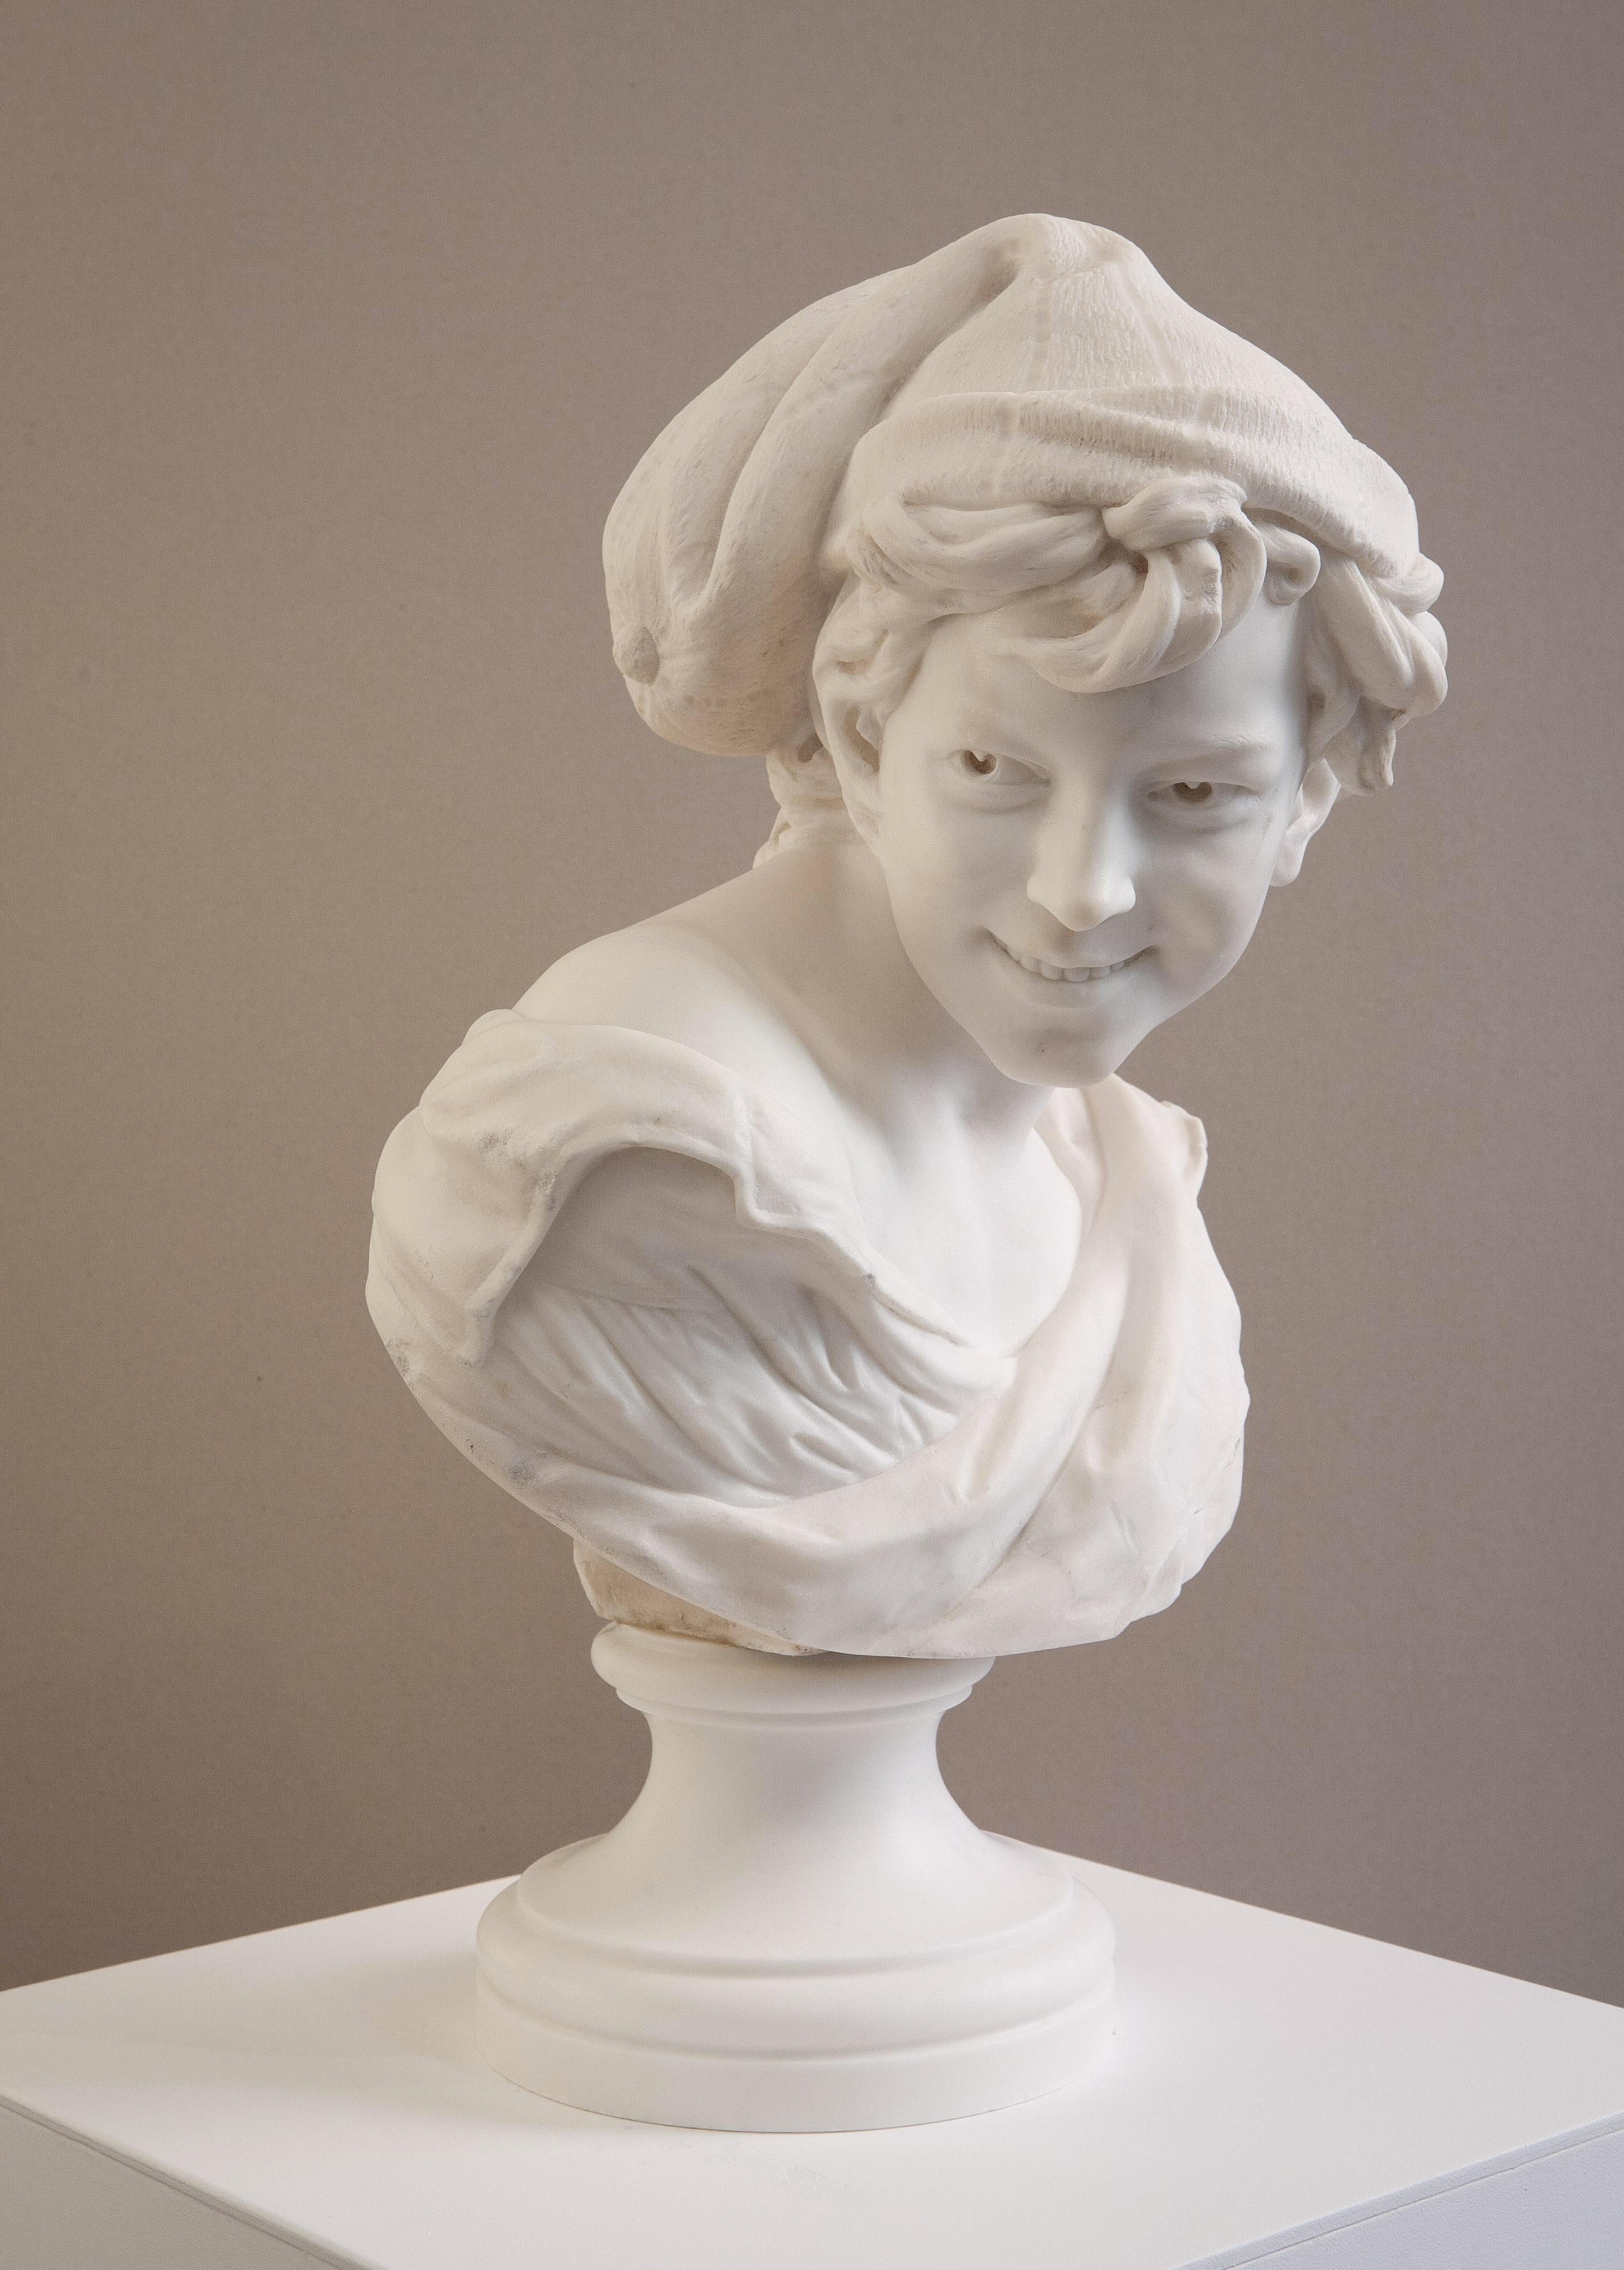 Le Rieur napolitain - Sculpture by Jean-Baptiste Carpeaux (1827-1875)